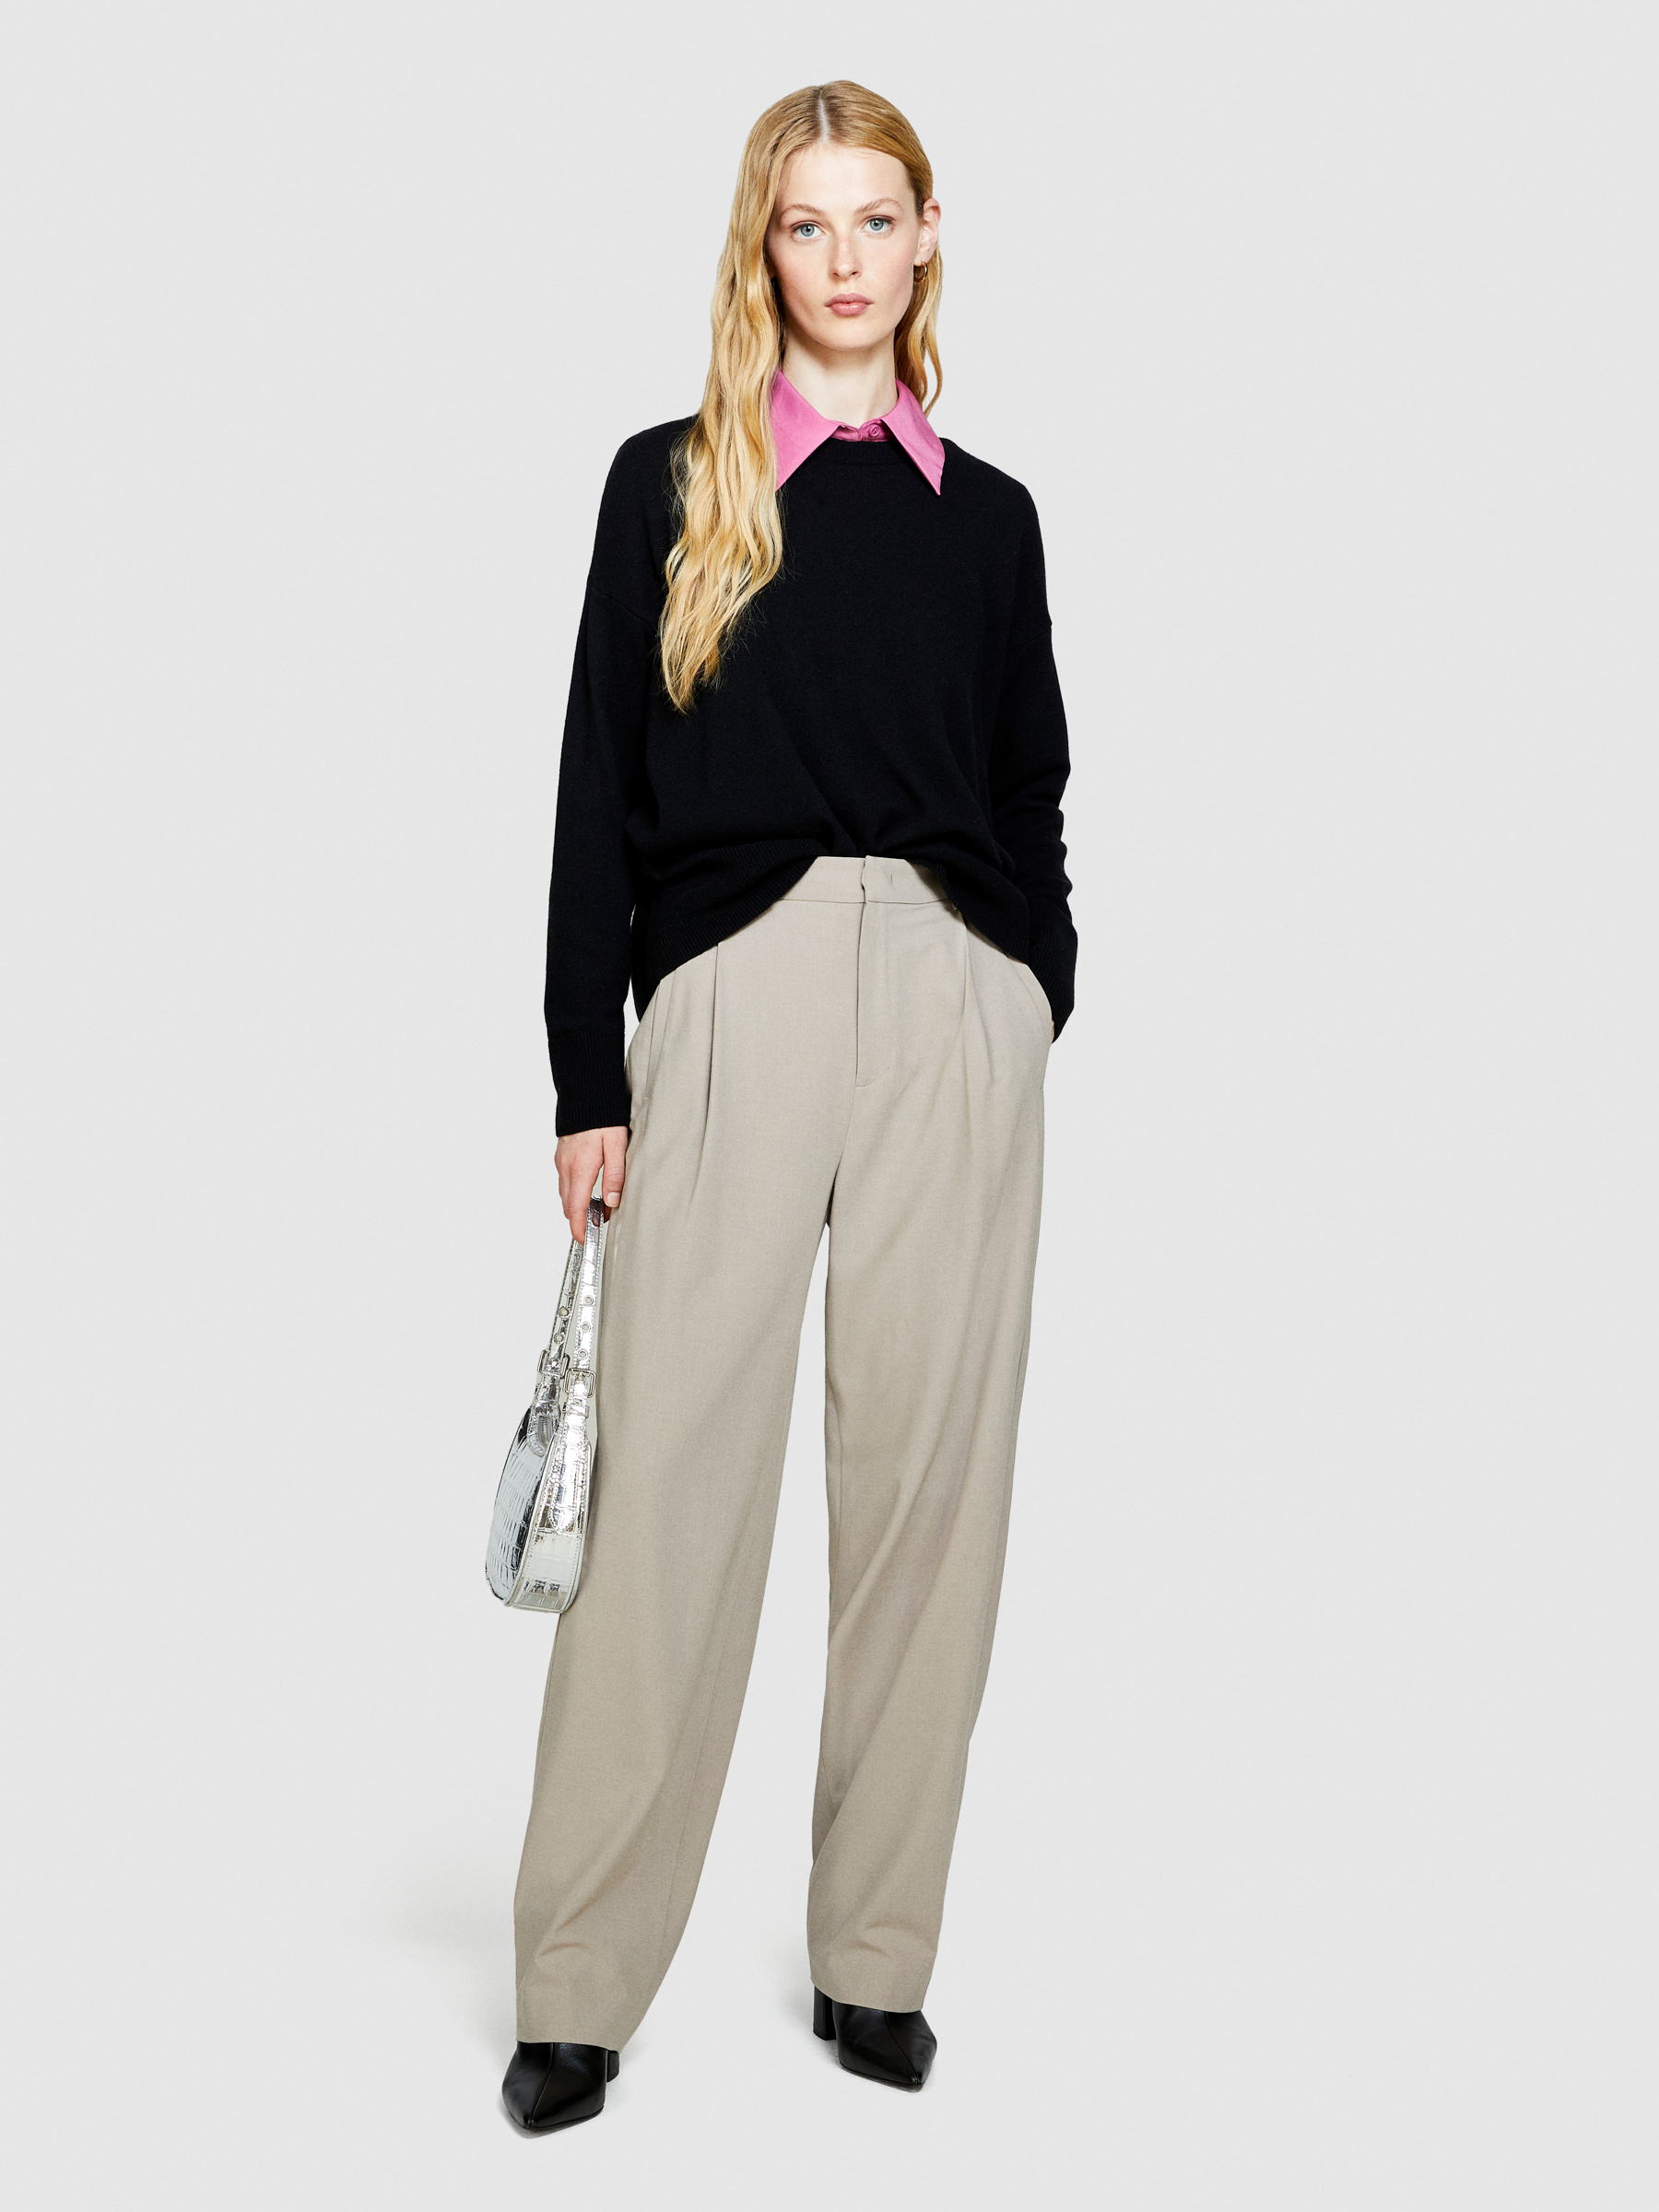 Sisley - Boxy Fit Sweater, Woman, Black, Size: M